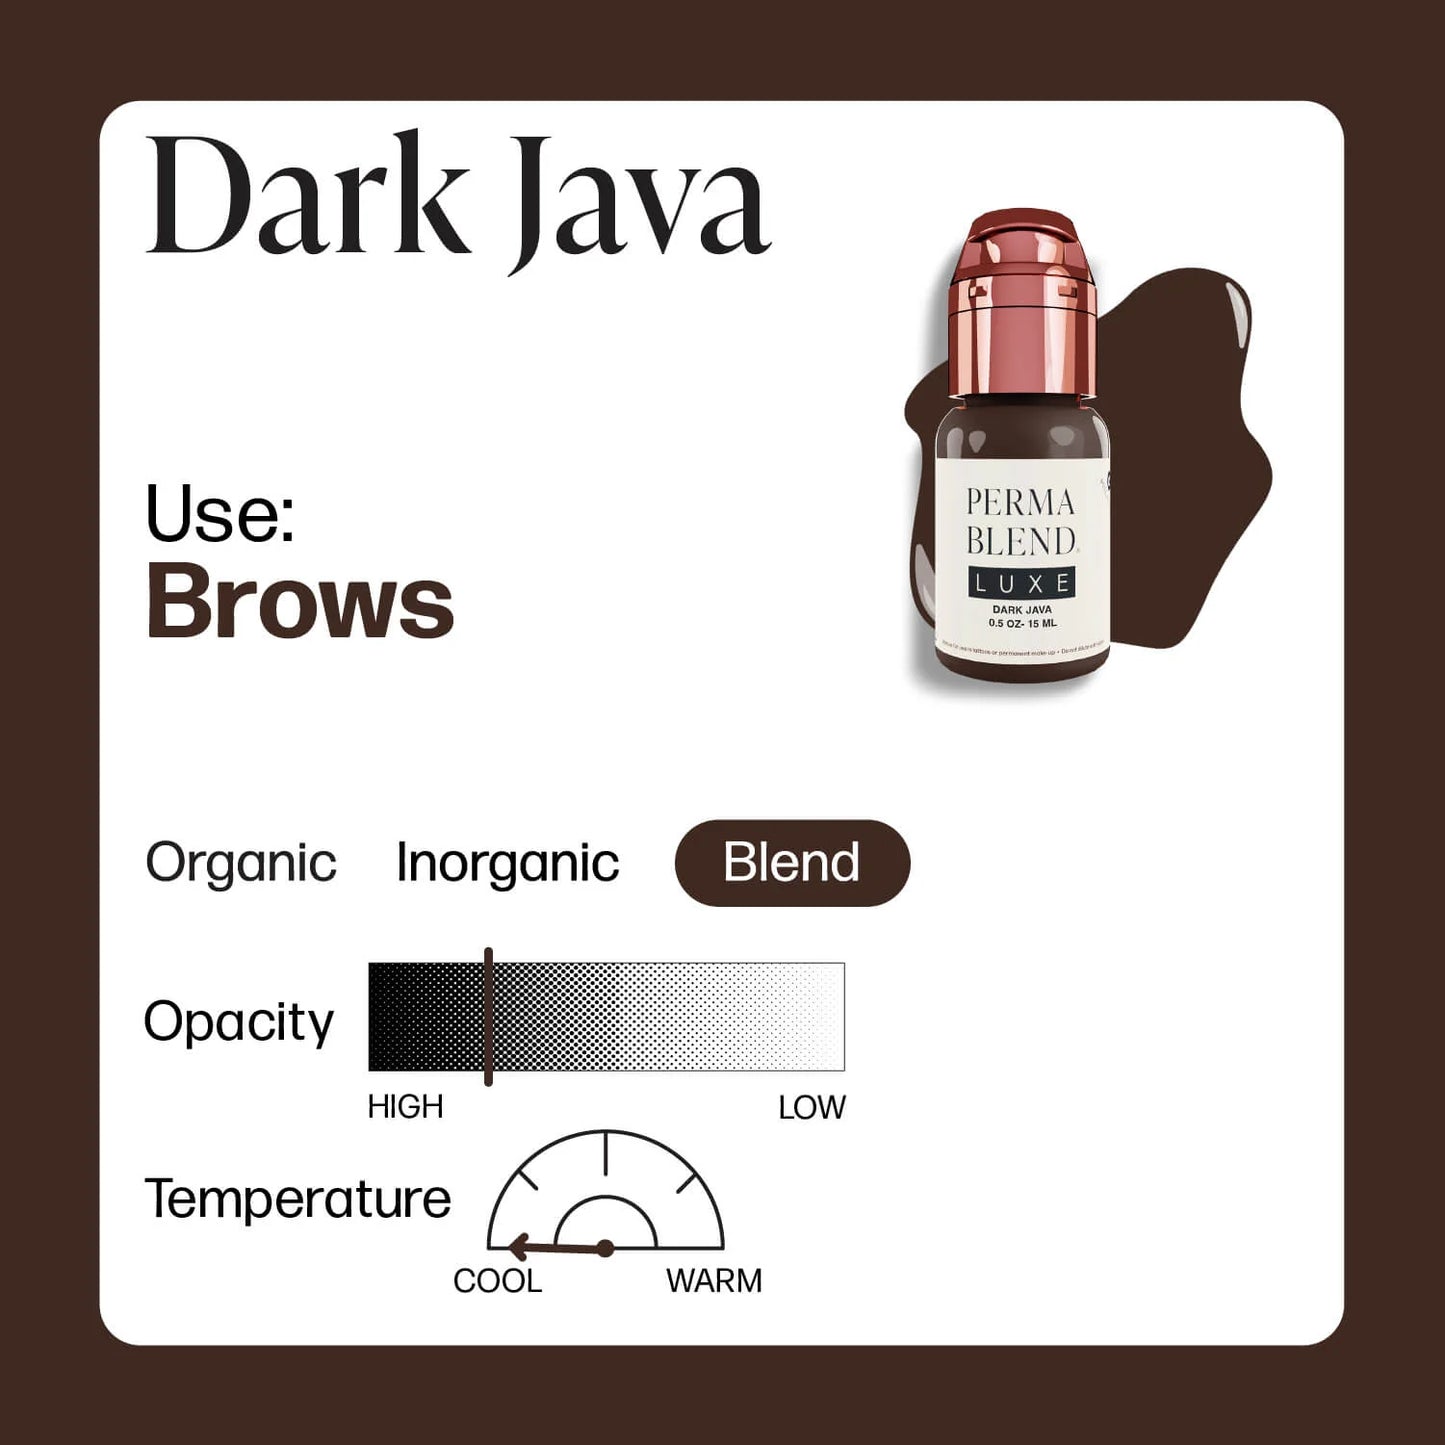 Dark Java - 15 ml - Permablend LUXE